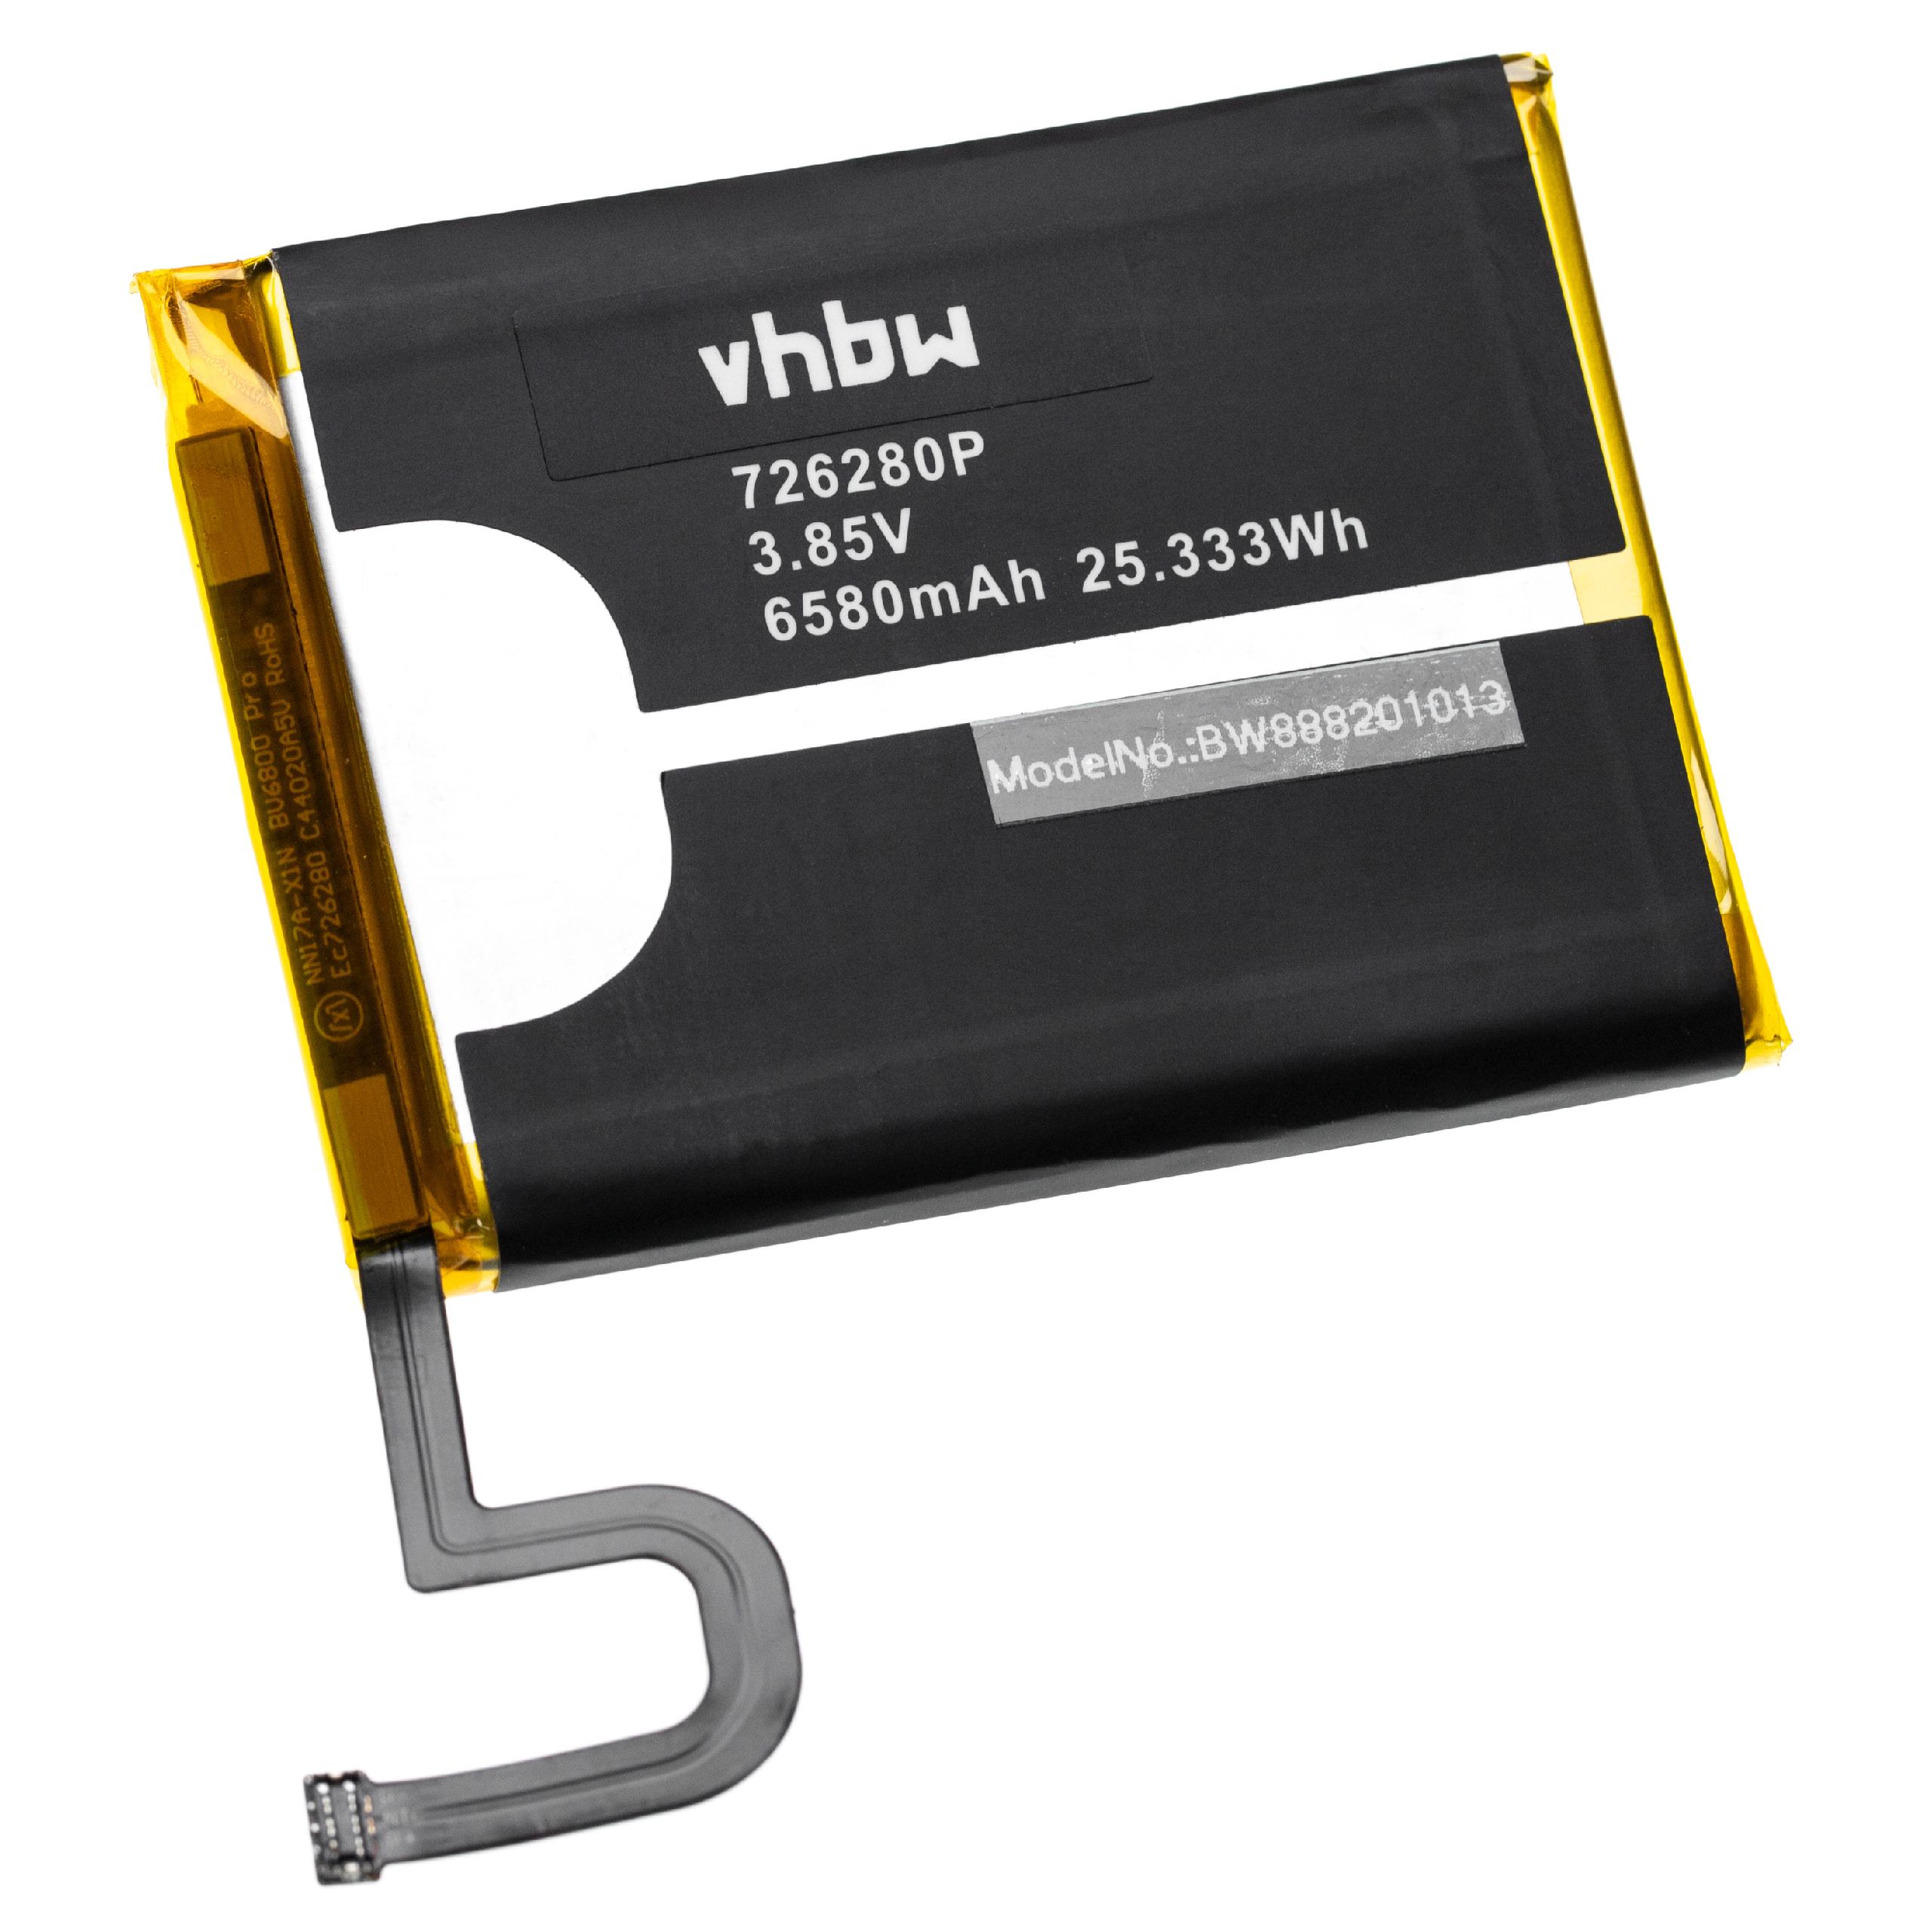 Batteria sostituisce Blackview 726280P per cellulare Blackview - 6580mAh 3,85V Li-Ion + utensili